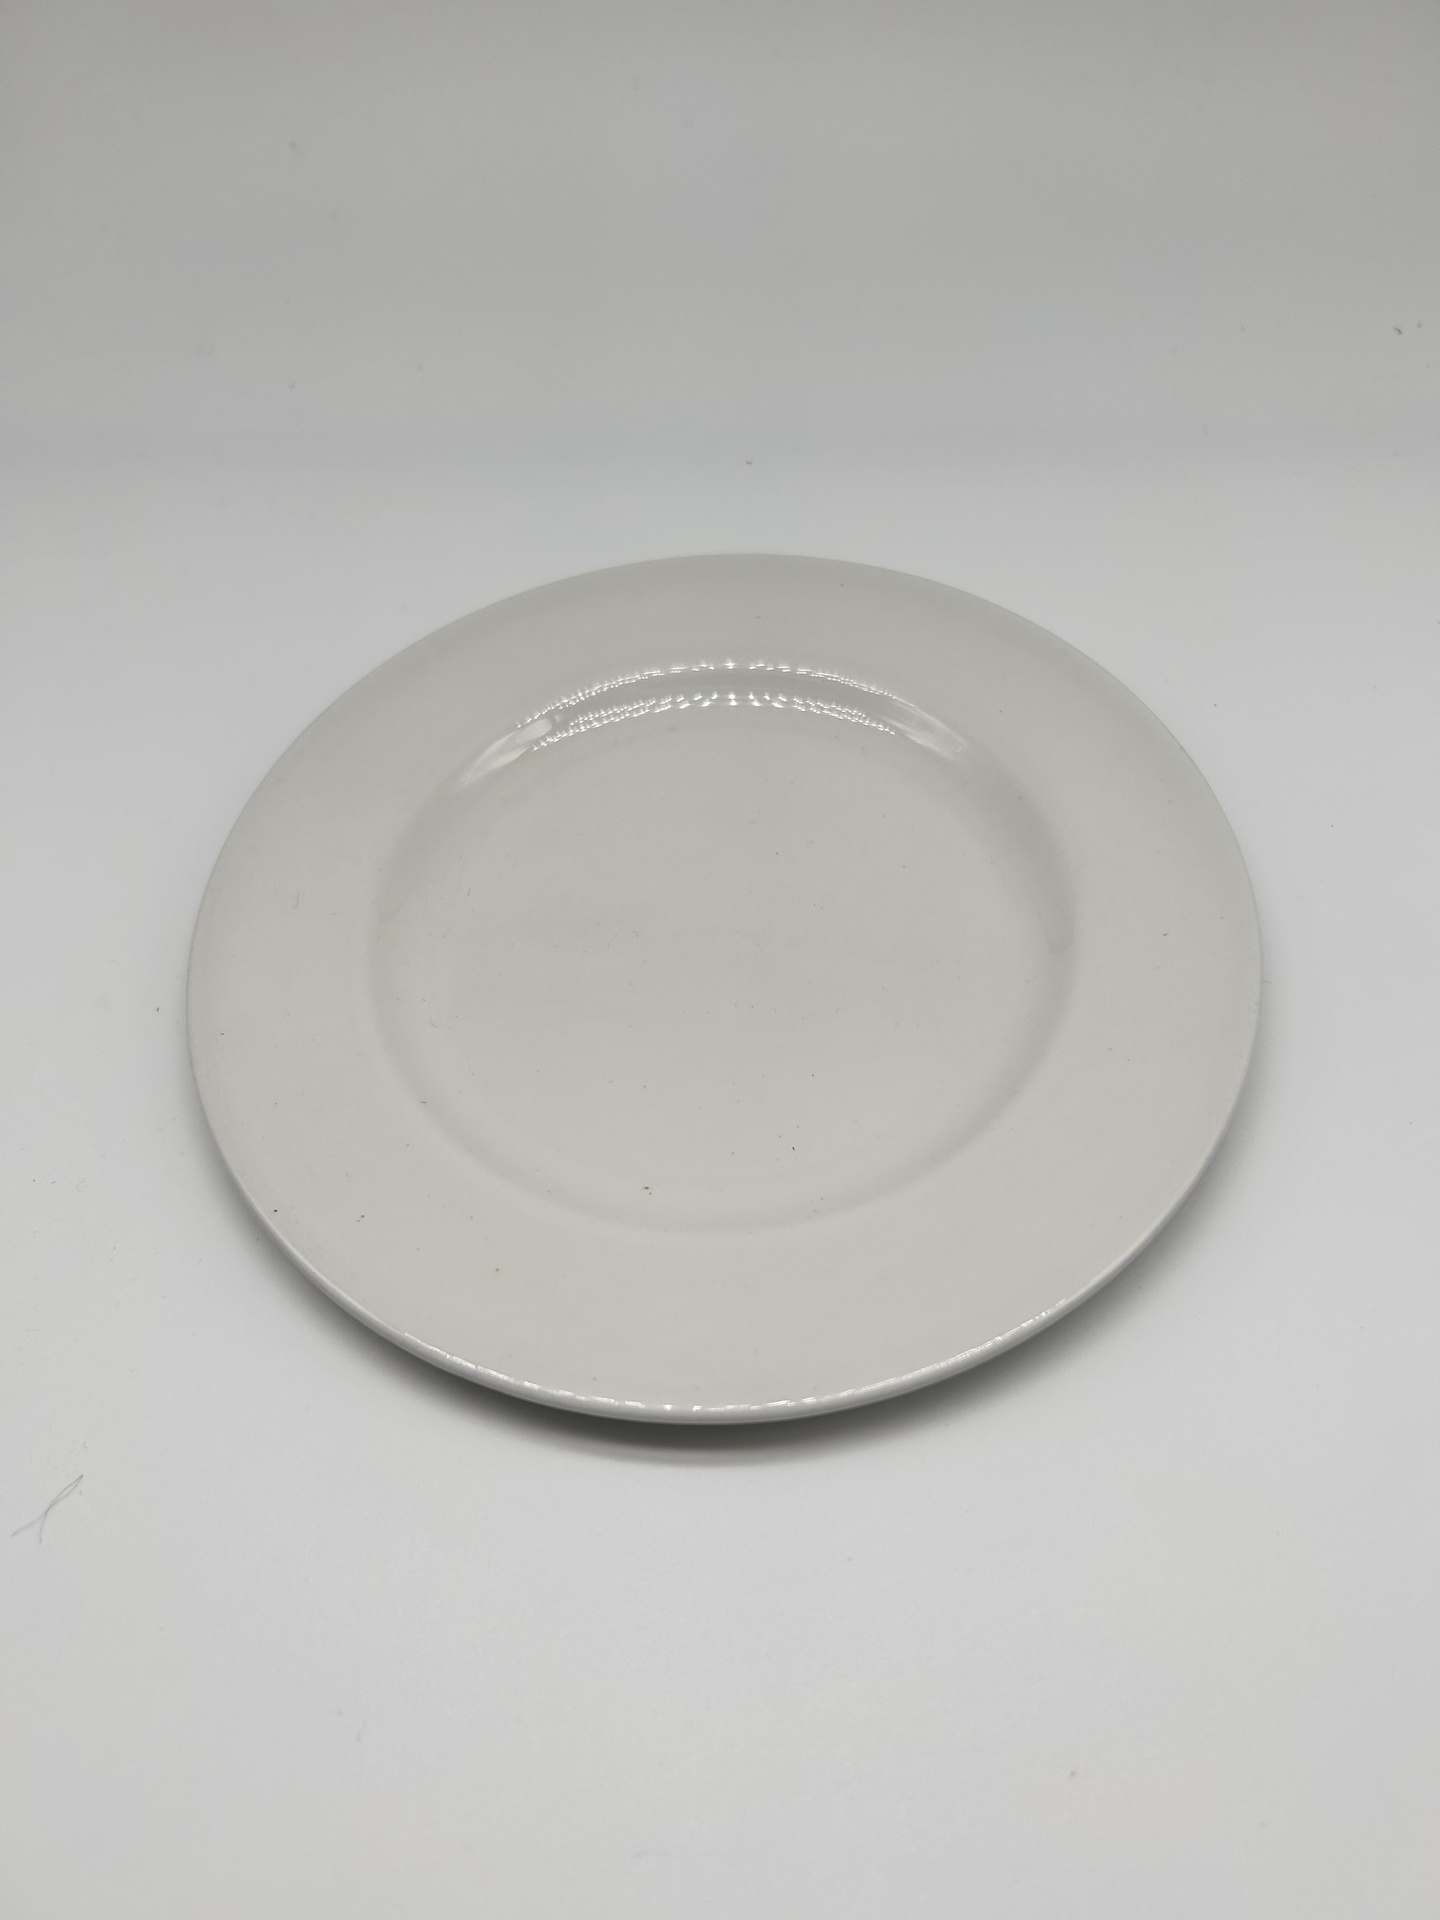 6.5" Round side/dessert plate